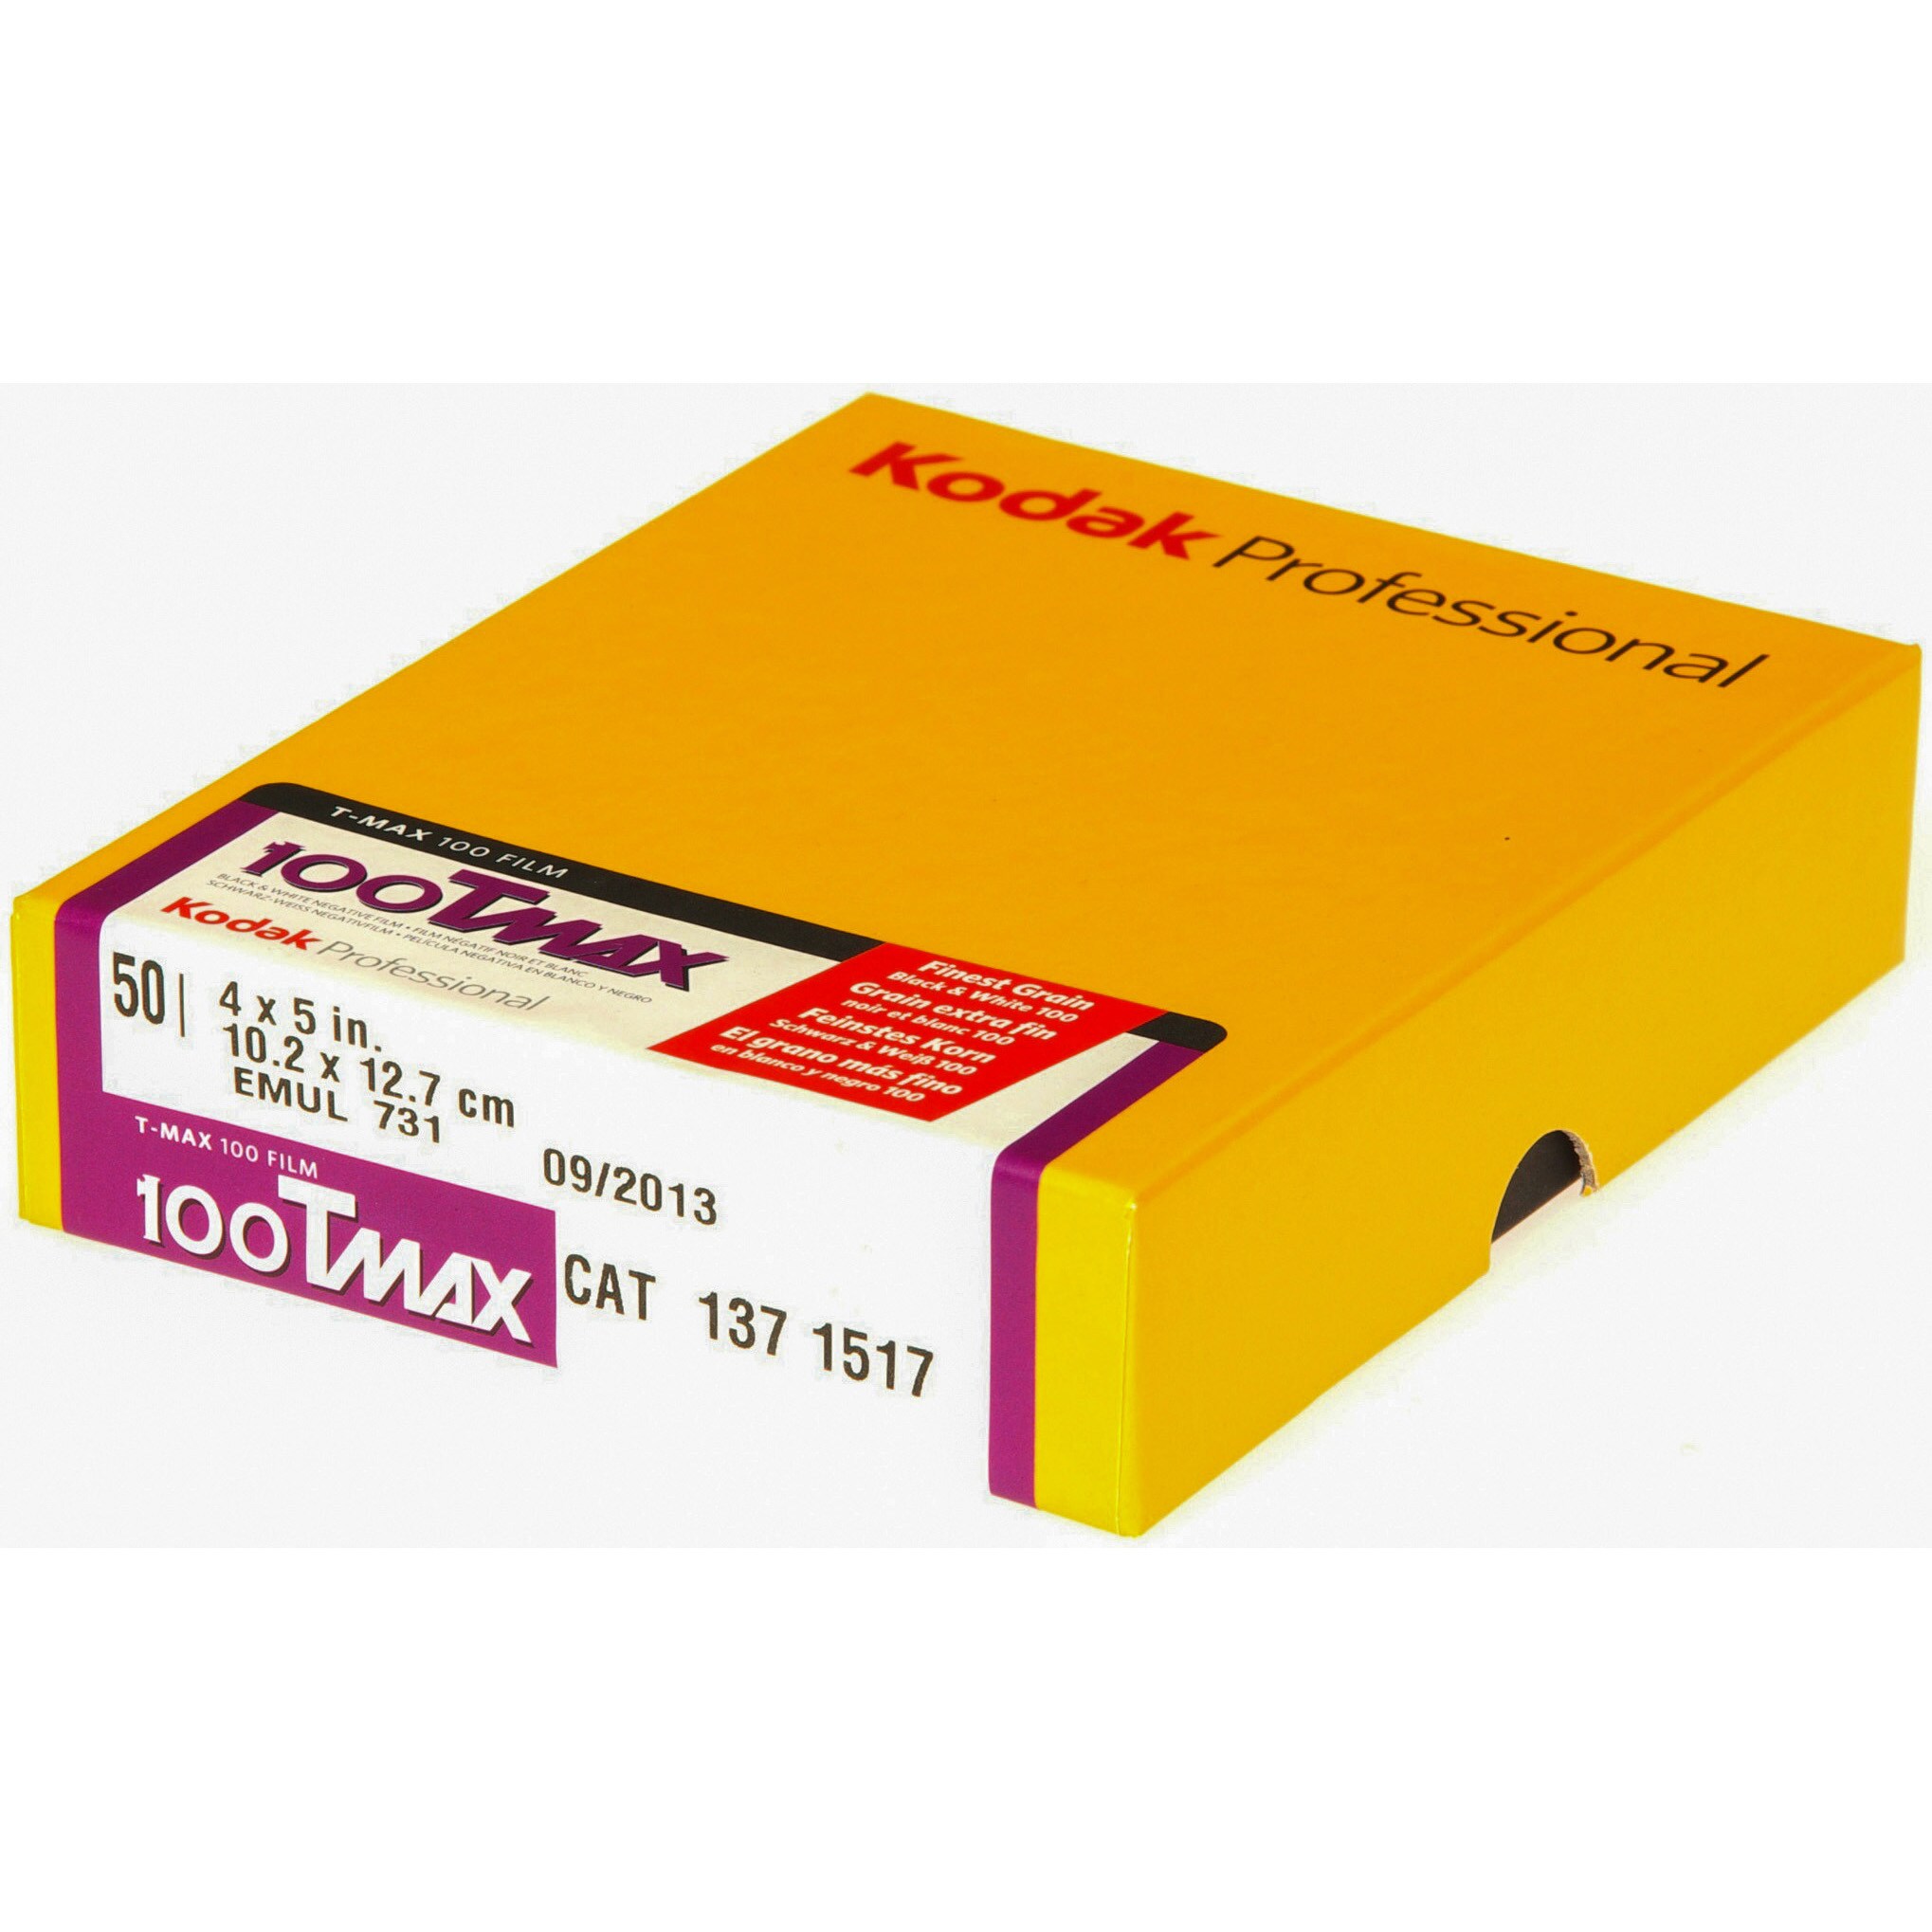 T-MAX100(100TMX) 4x5(50枚入) KODAK PROFESSIONAL 黒白フィルム 1箱